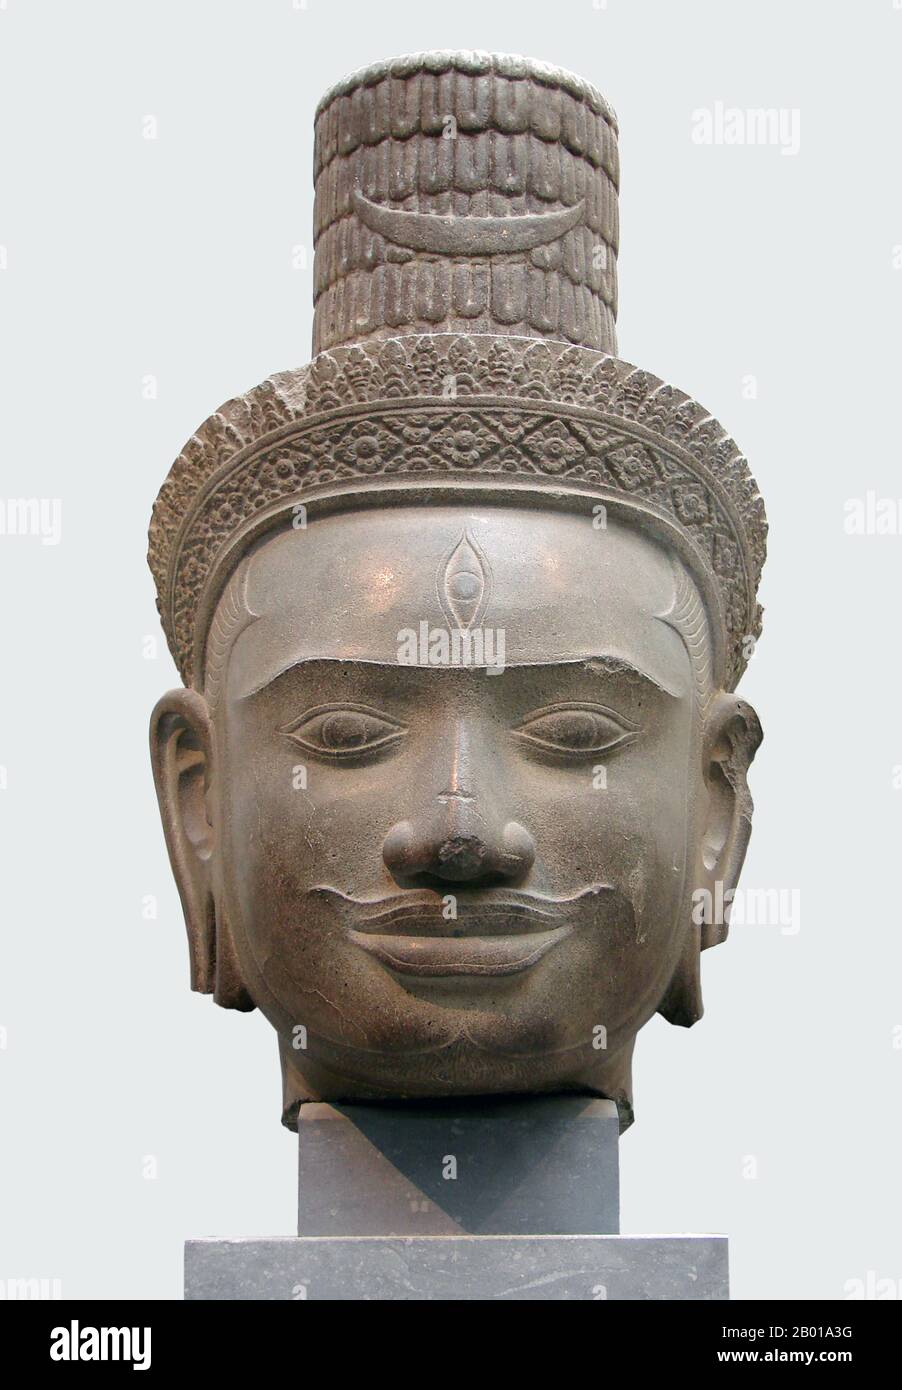 Cambodge: Chef de Shiva de Phnom Bok, Siem Reap, maintenant au Musée Guimet, Paris, 9th-10th siècle. Phnom Bok est une colline dans le nord-est de la Baray est au Cambodge, avec un prasat (temple) du même nom construit sur elle. C'est l'une des 'trilogie de montagne', dont chacune a un temple avec un agencement similaire. La création du temple est créditée du règne de Yasovarman I (889–910) entre les 9th et 10th siècles et a été établie après qu'il a déplacé sa capitale à Angkor et l'a nommée Yasodharapura. Les deux autres temples sœurs sont Phnom Bakheng et Phnom Krom. Banque D'Images